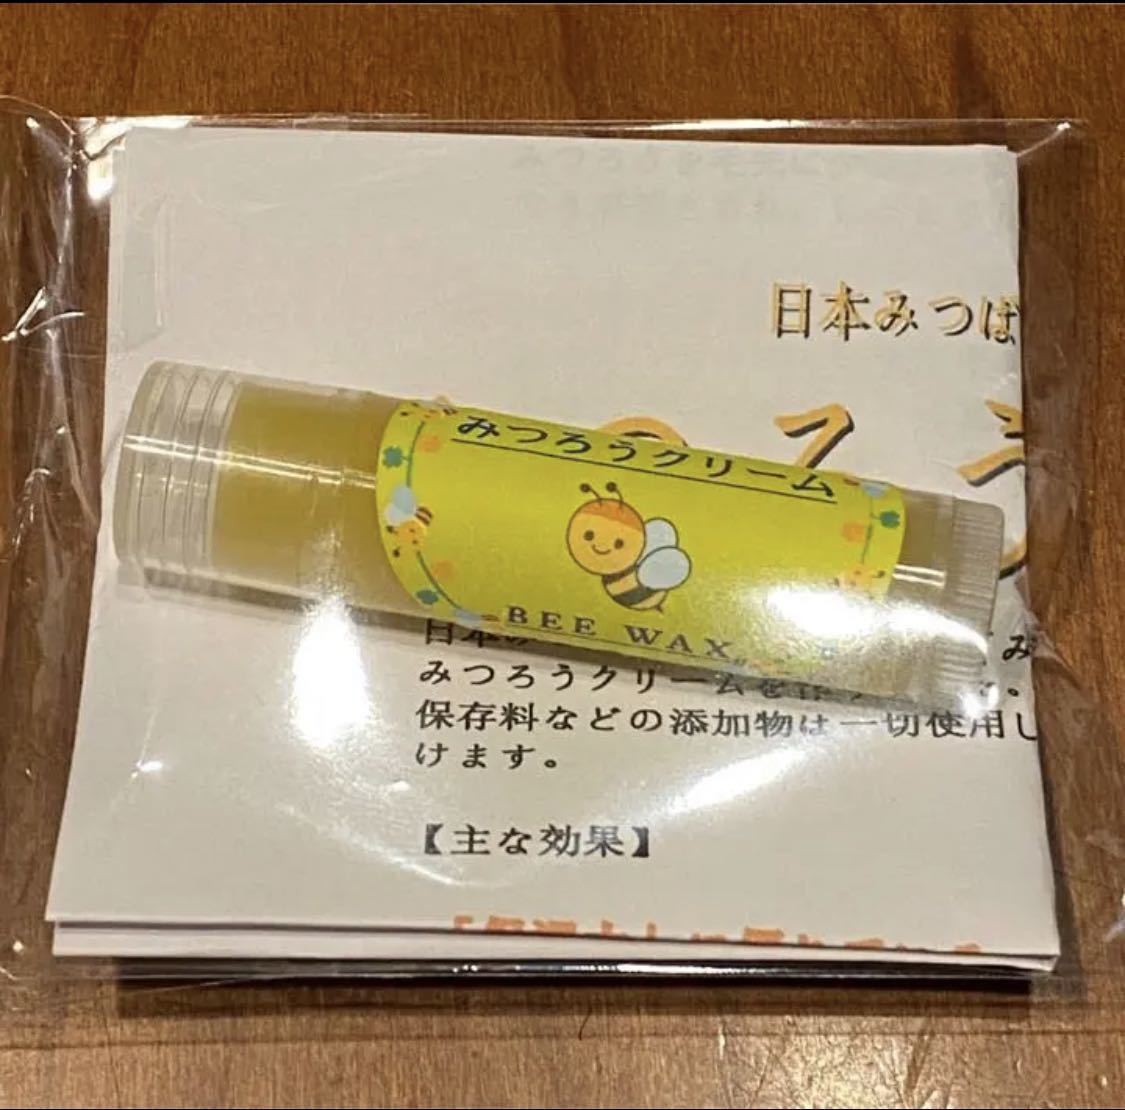 日本ミツバチ 蜜蝋クリーム 肉球クリーム リップタイプ 舐めても安心 オーガニックの画像4